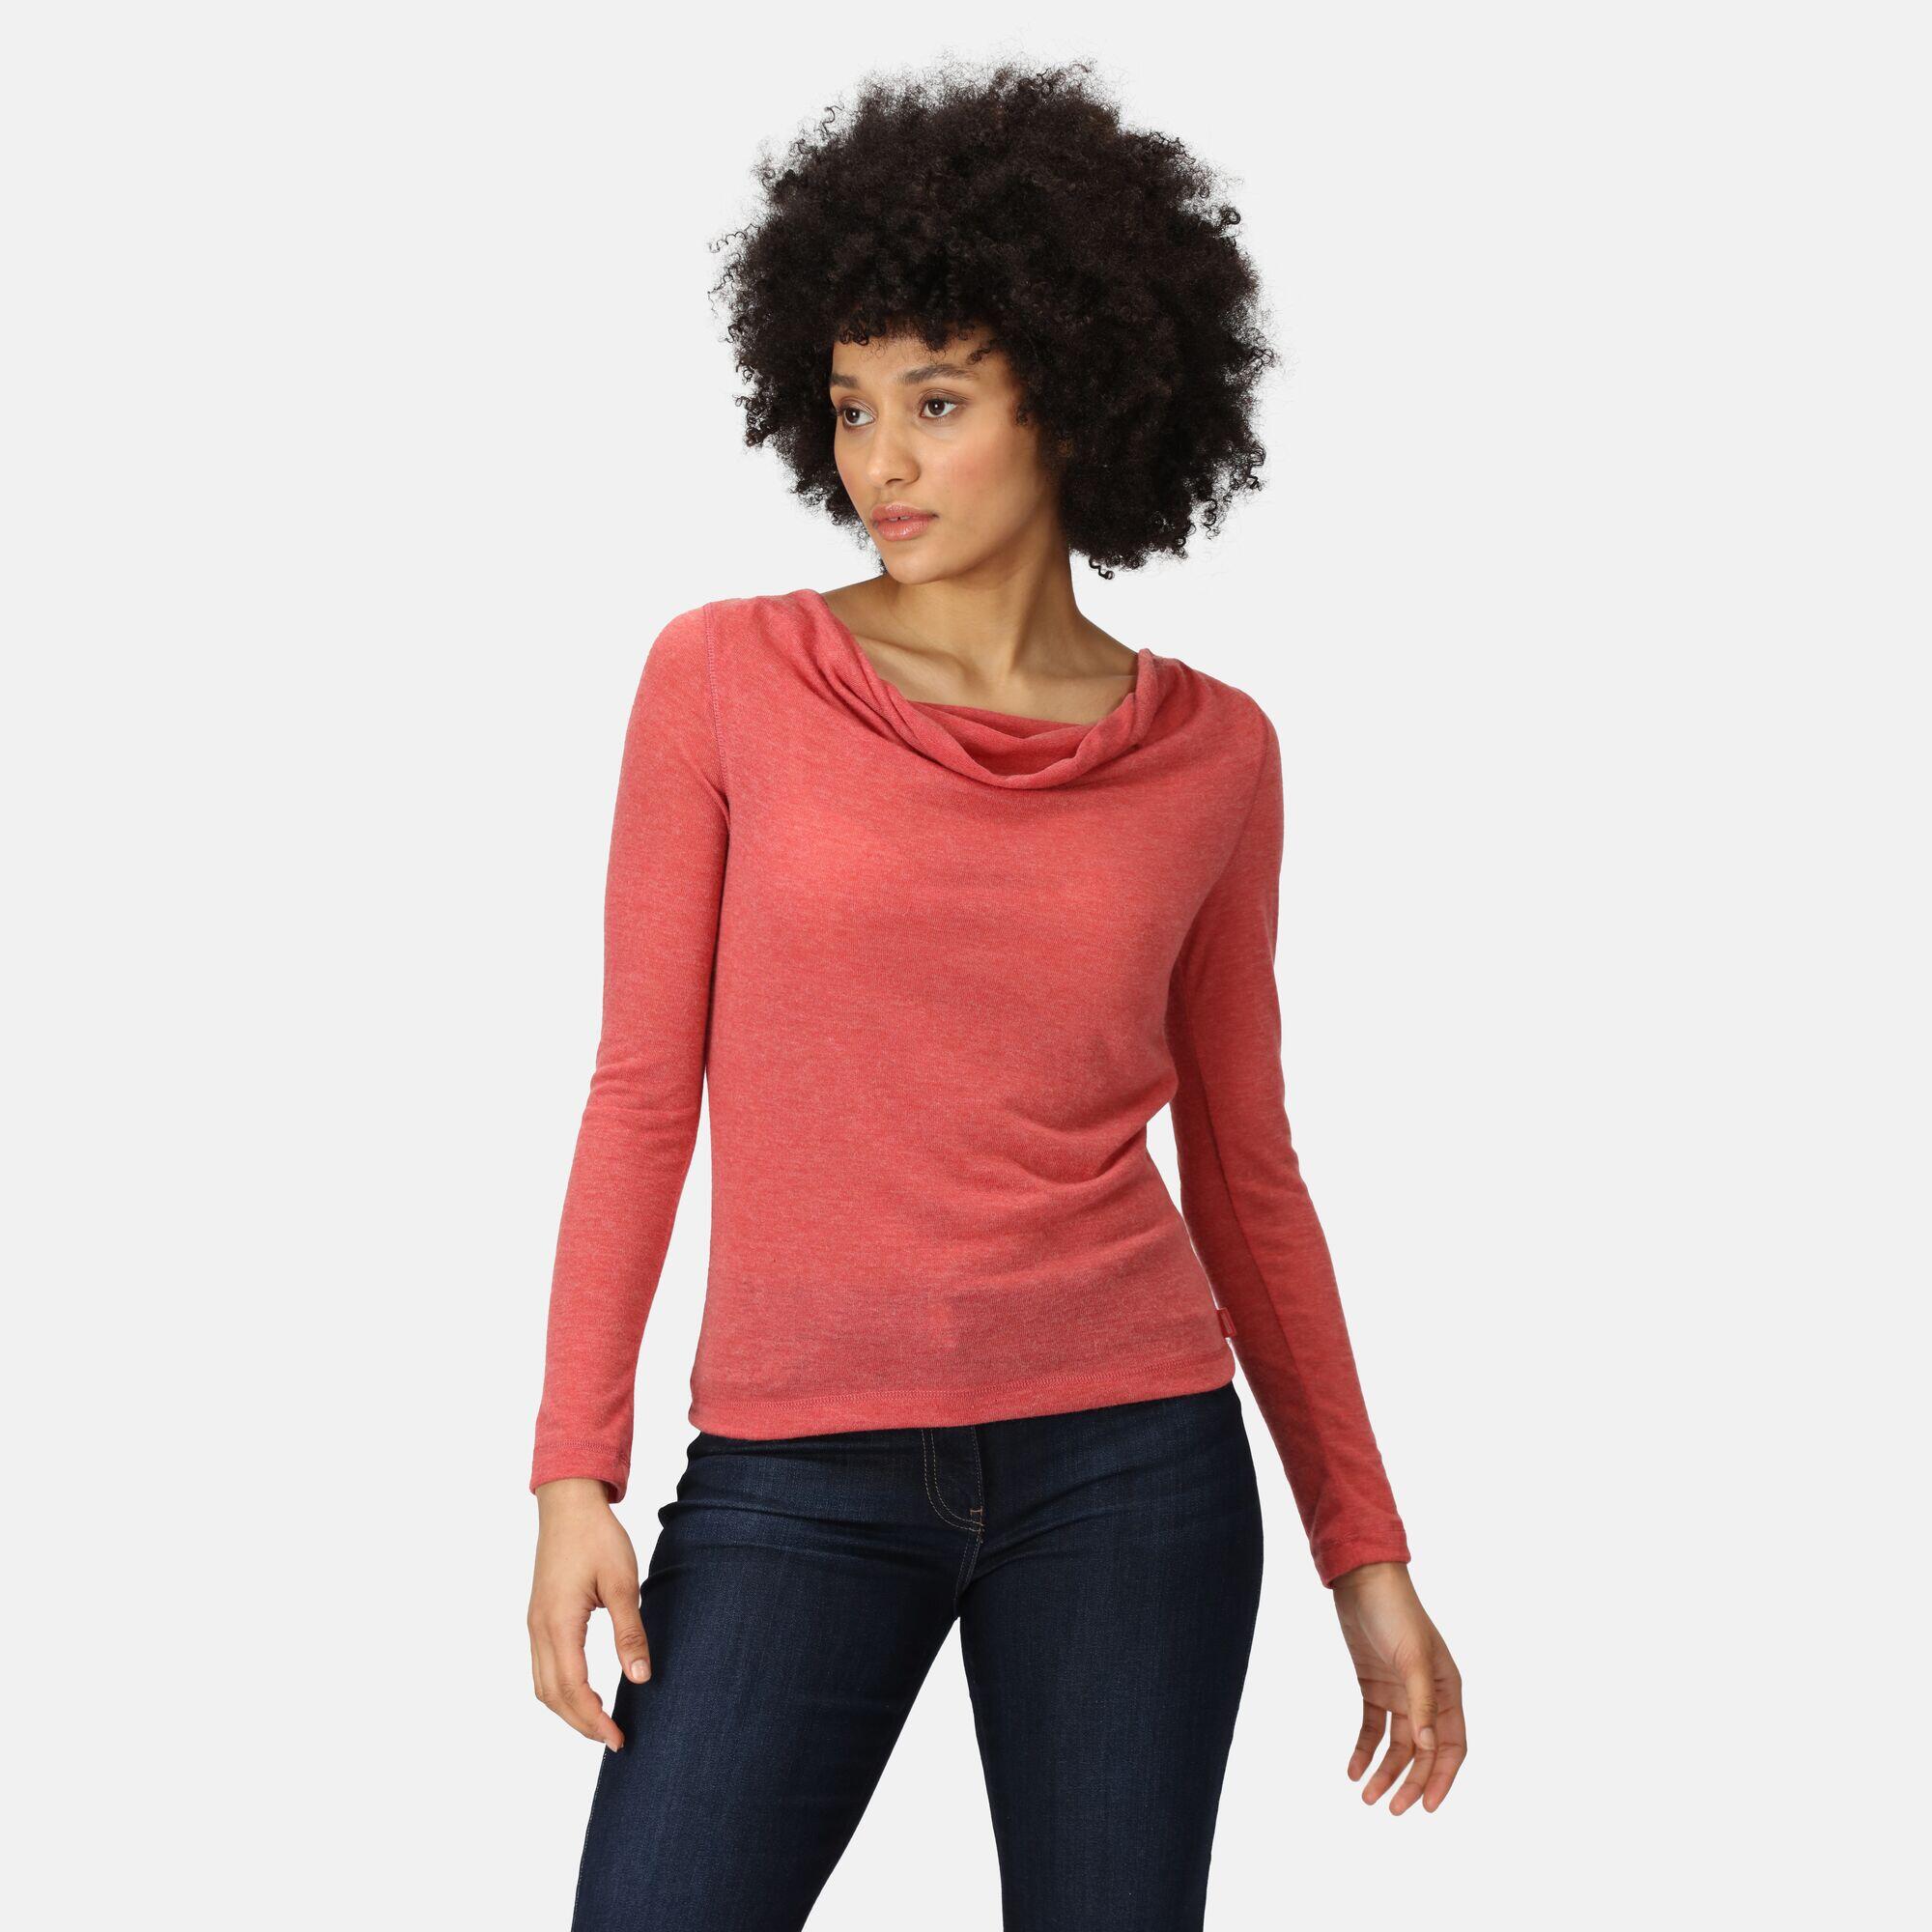 Frayda Women's Walking Long-Sleeve T-Shirt 4/5